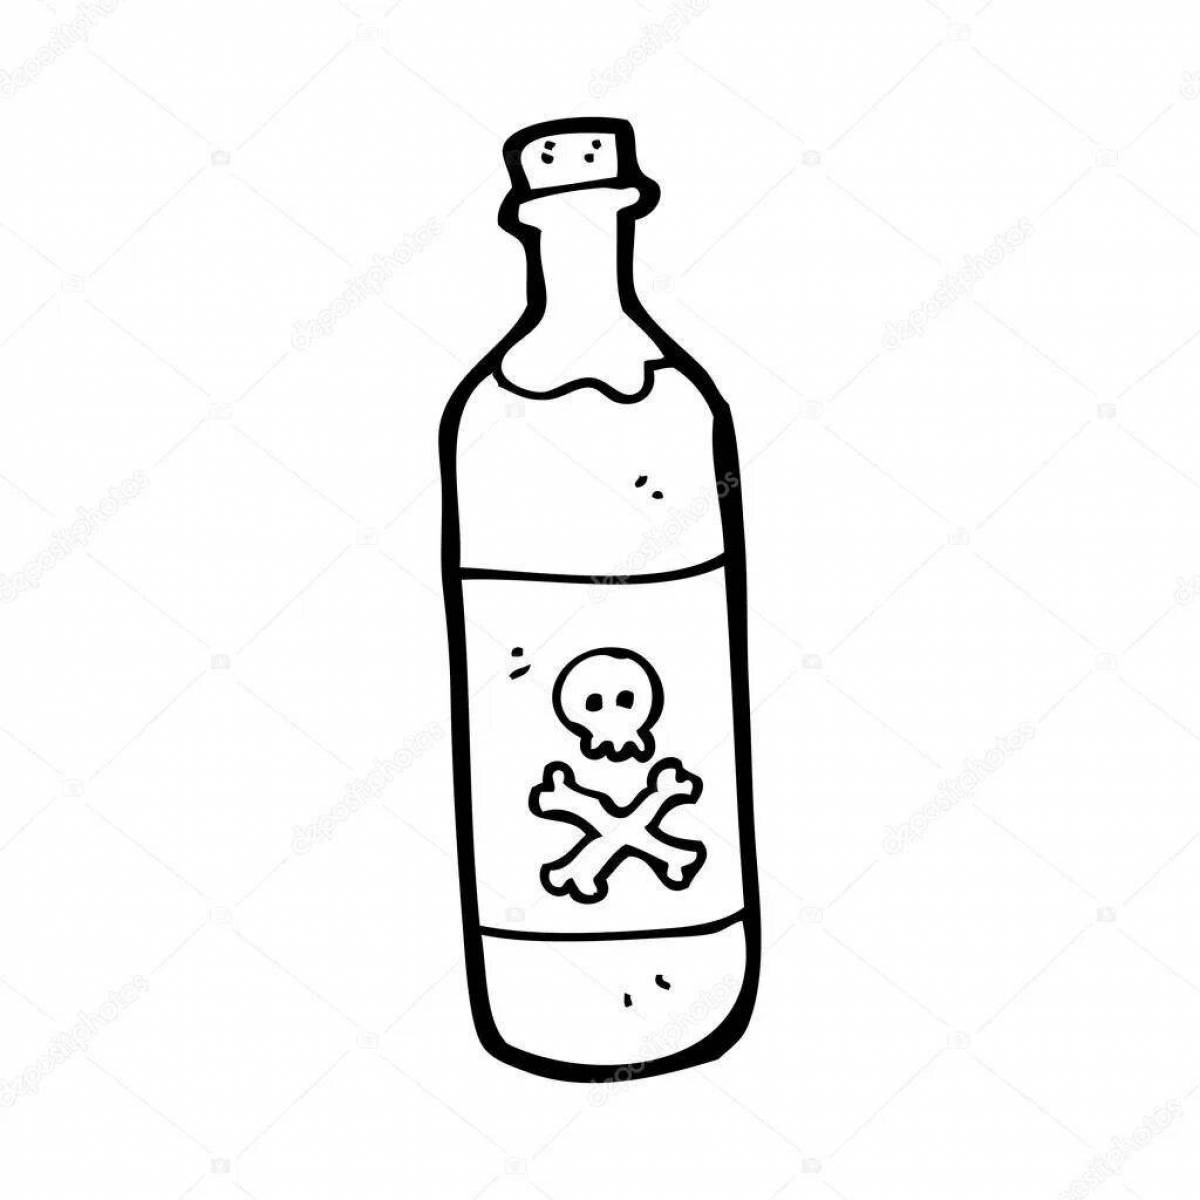 Children's bottle #4